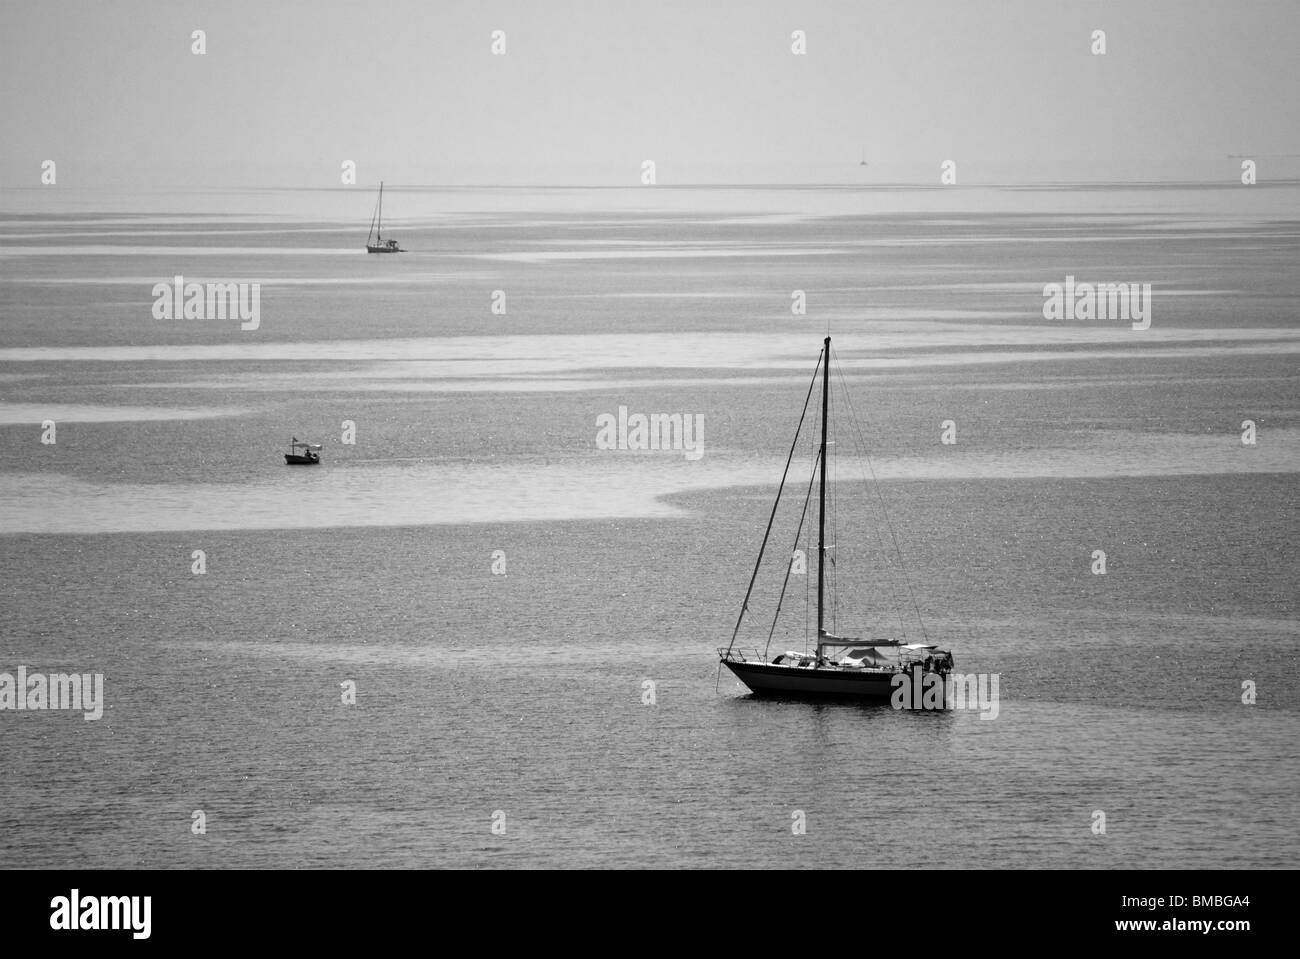 Une image en noir et blanc de deux voiliers et un bateau de pêche naviguant dans la mer ionienne (Corfou, Grèce) contre l'horizon clair. Banque D'Images